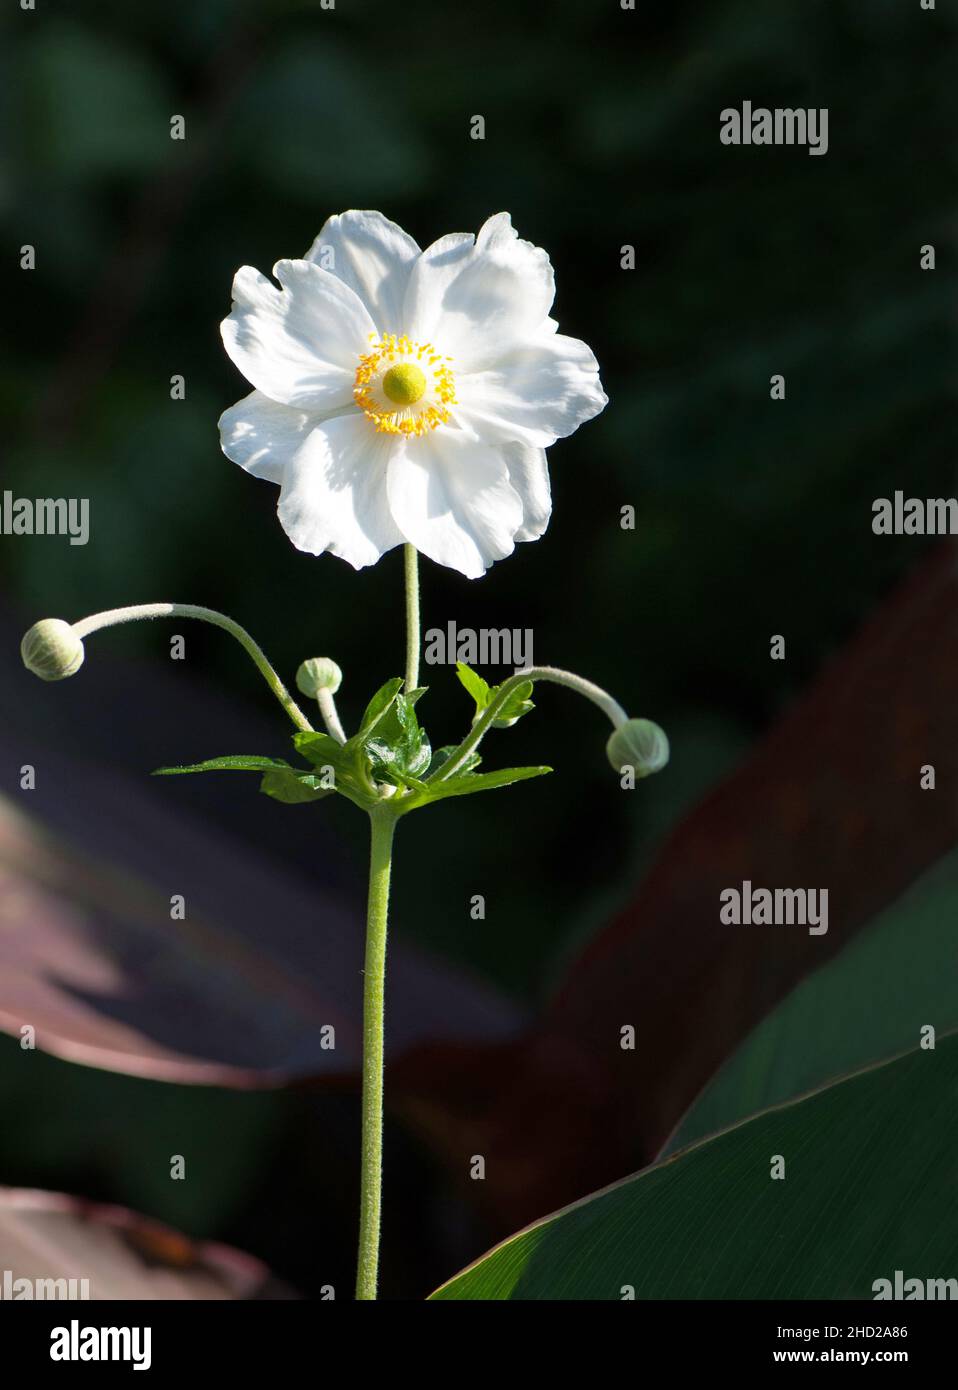 Anemone hybrida 'Honorine Jobert' Stock Photo